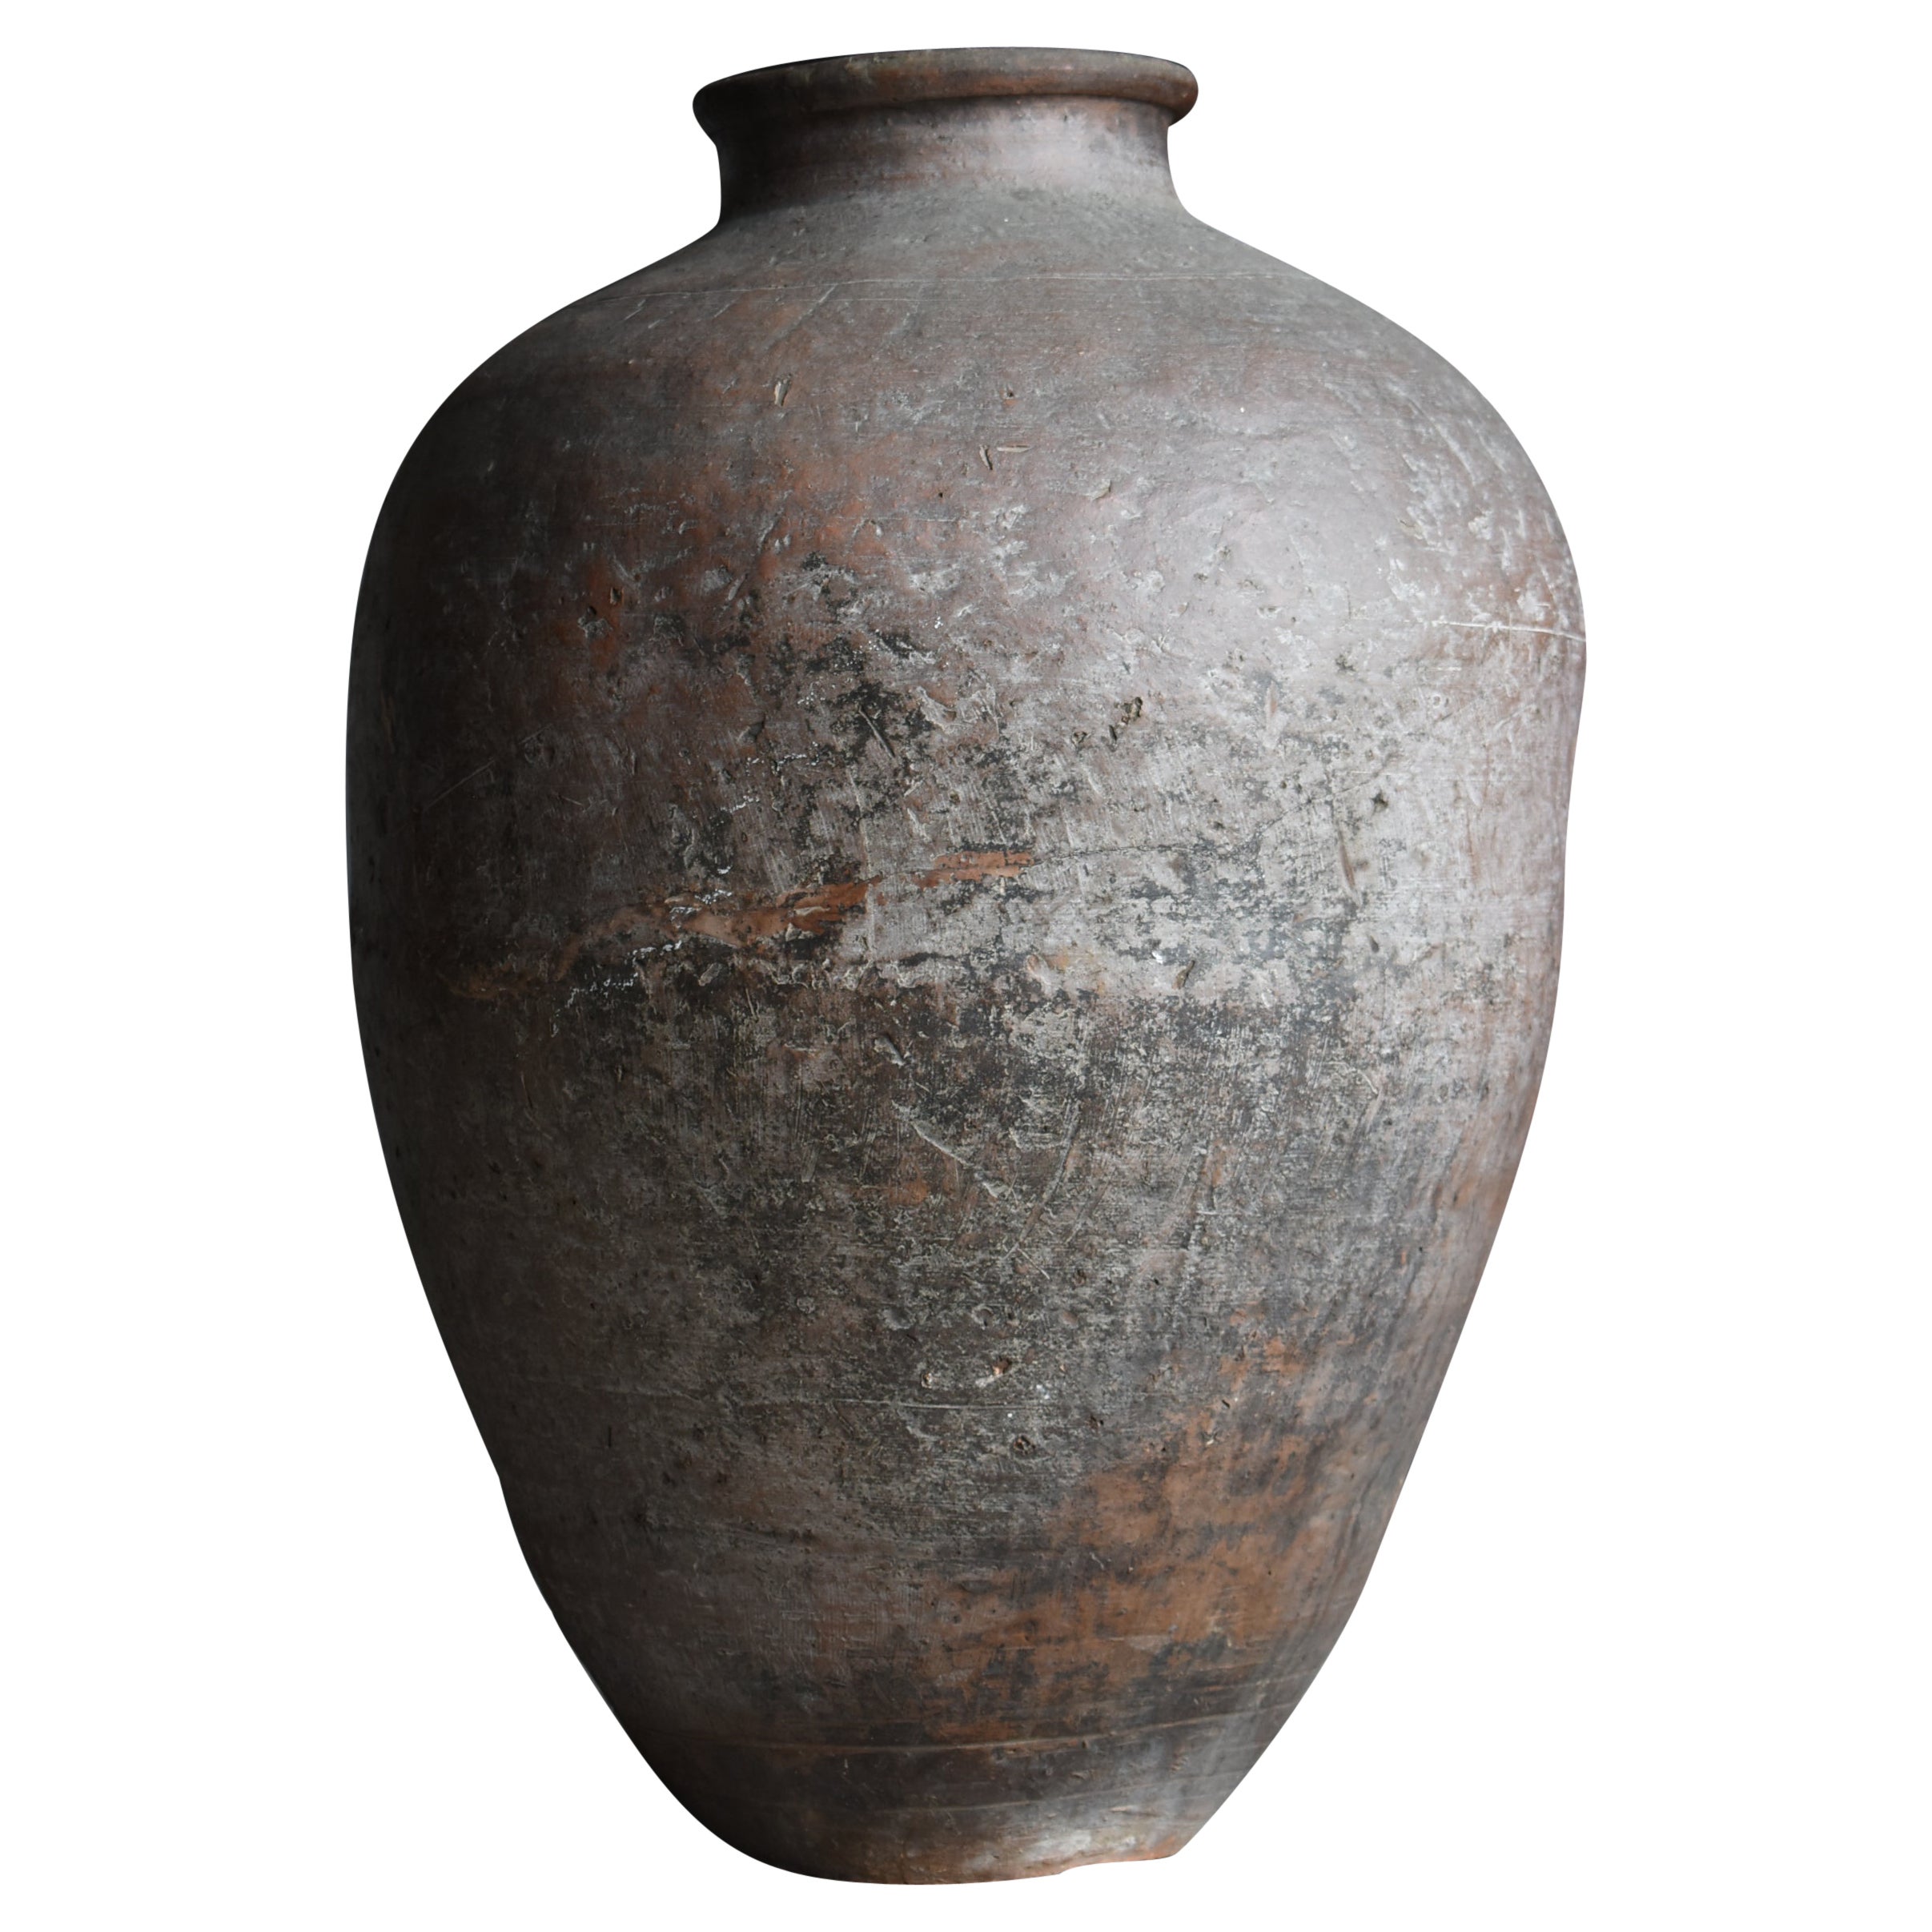 Japanese Antique Large Pottery Vase 1700s-1800s / Vessel Flower Vase Wabi Sabi